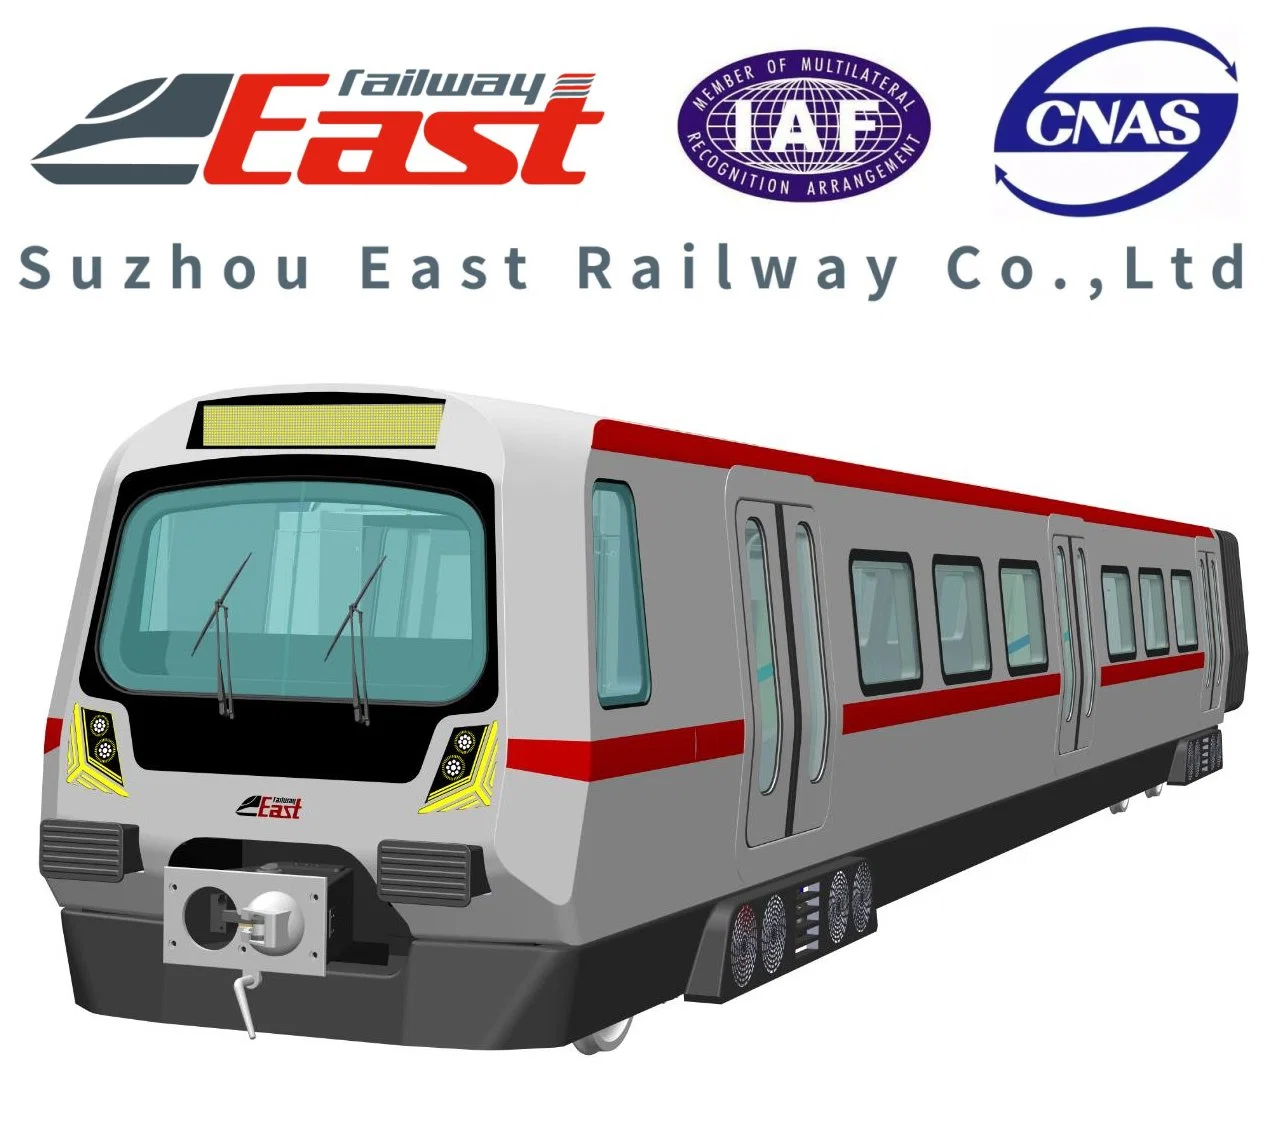 Eastrailway Muilt de alta calidad de los pasajeros de tren de la función de Metro, tren, metro